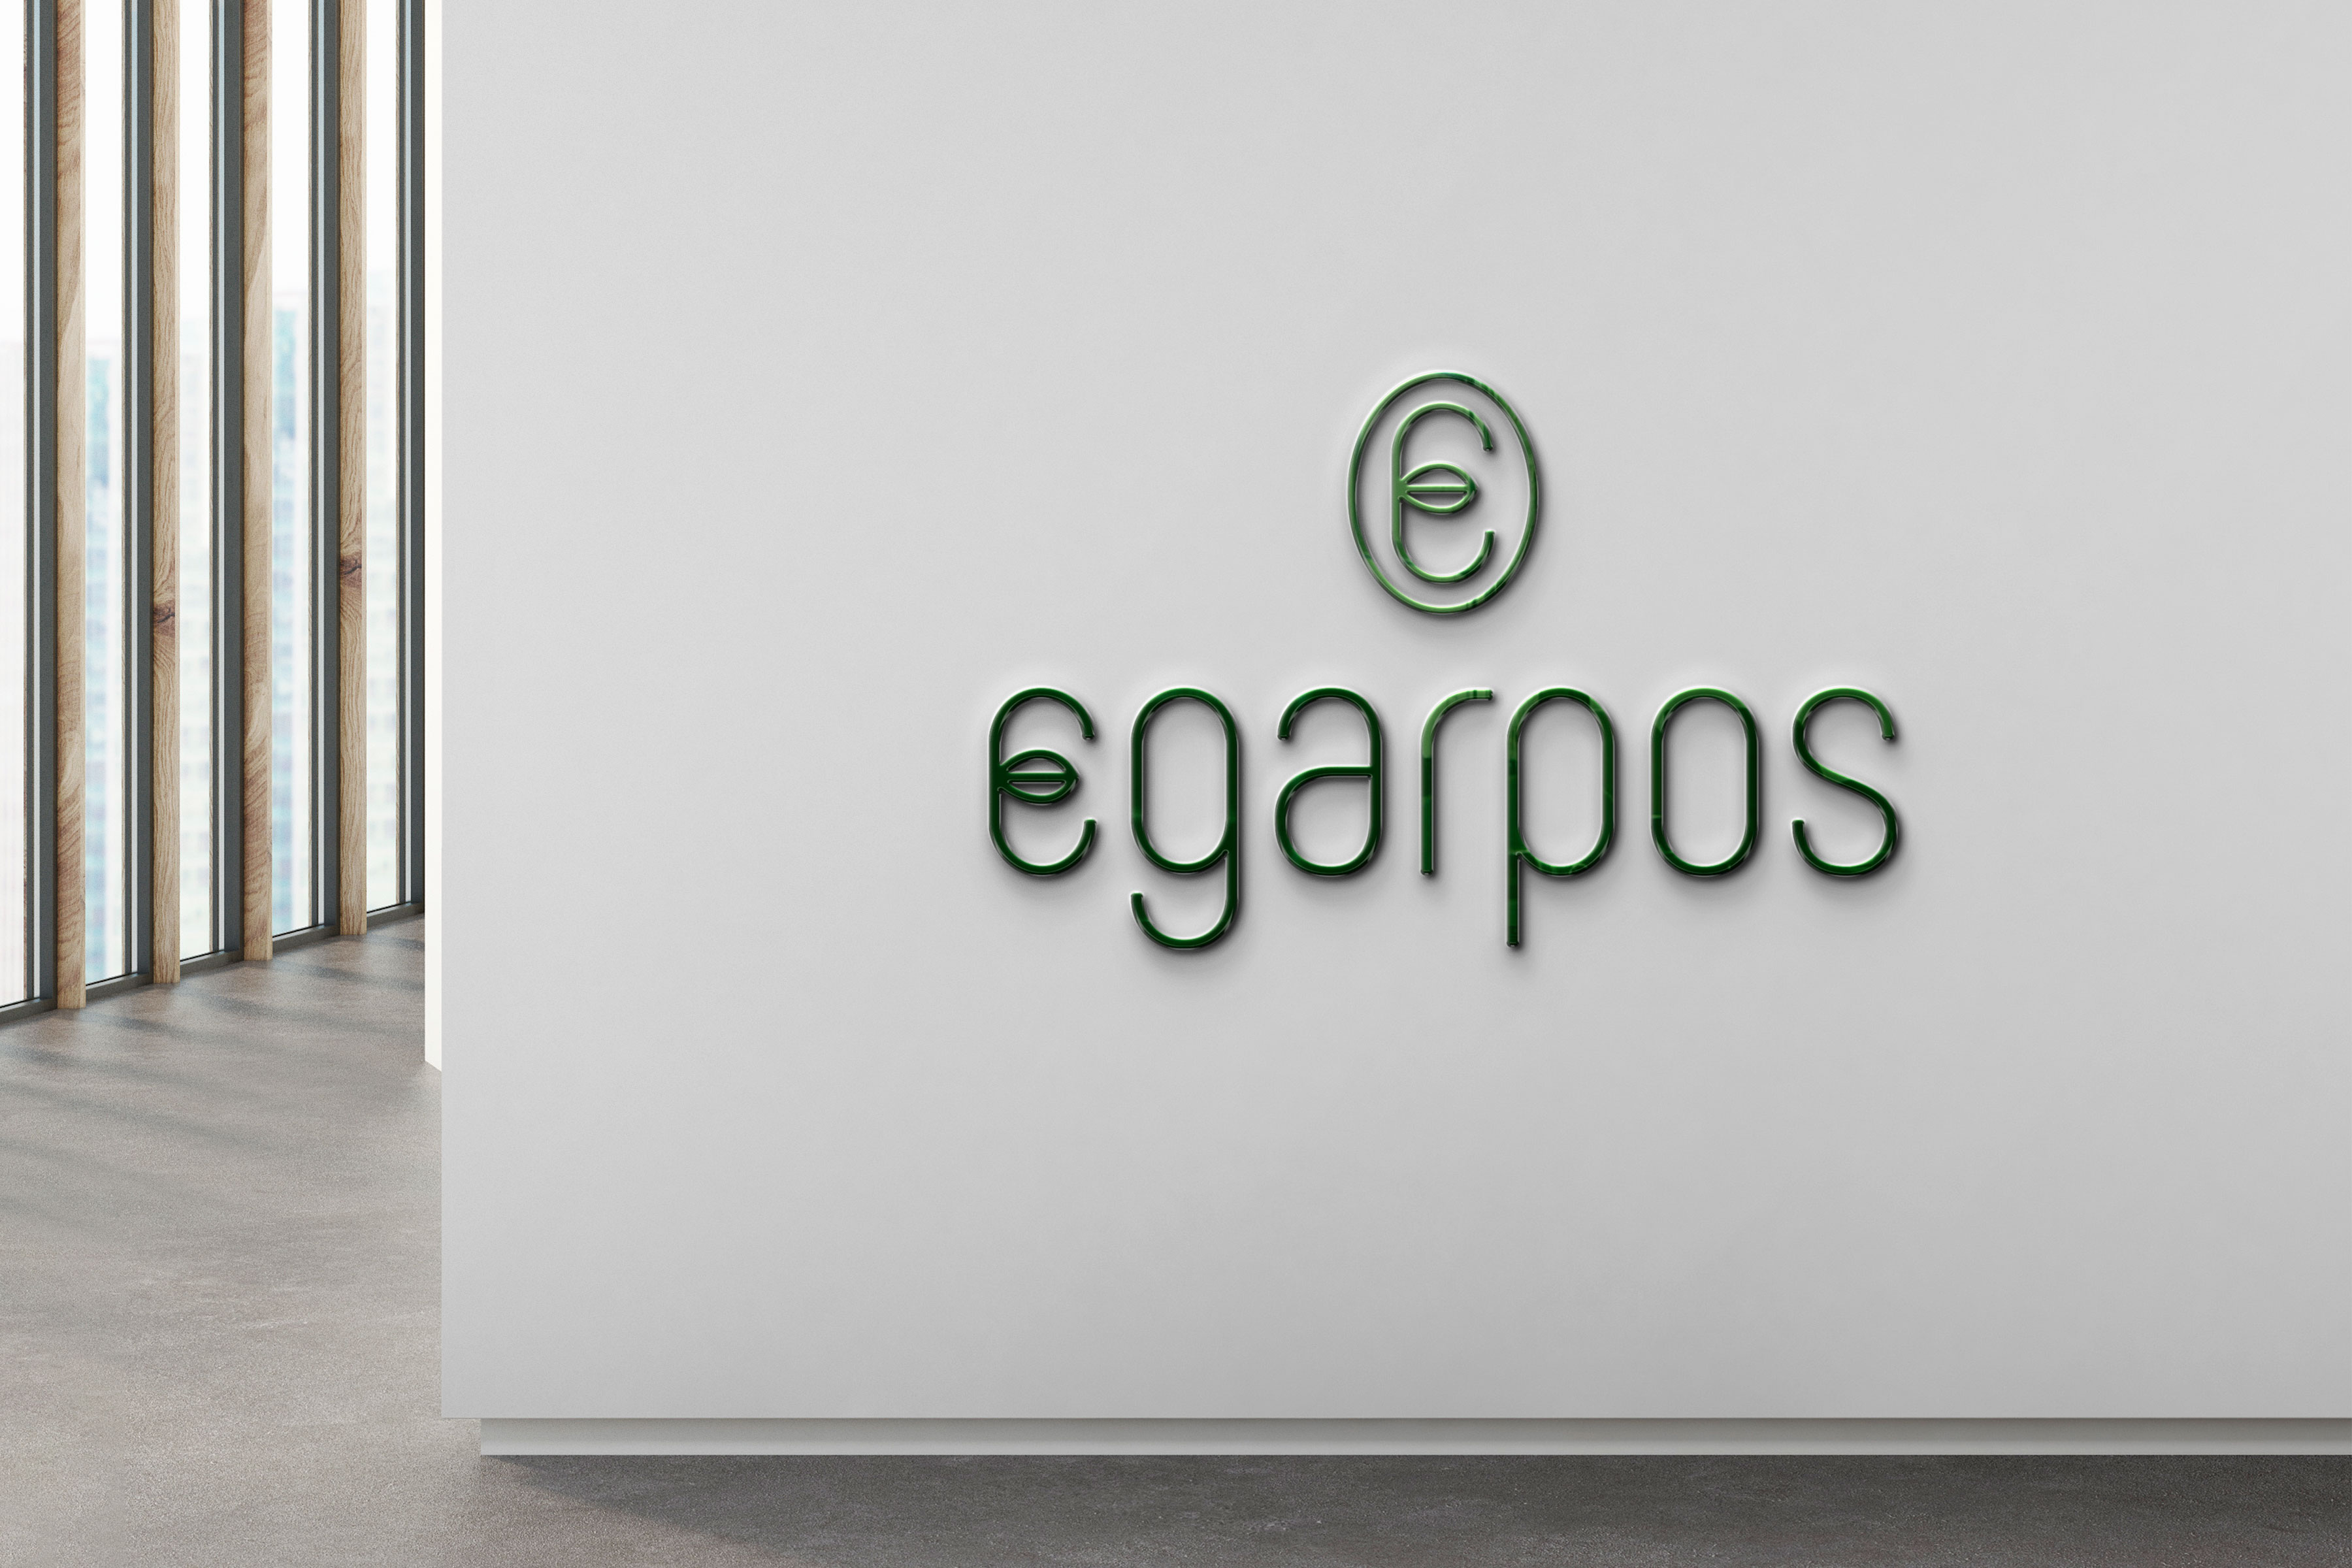 Egarpos Headquarters